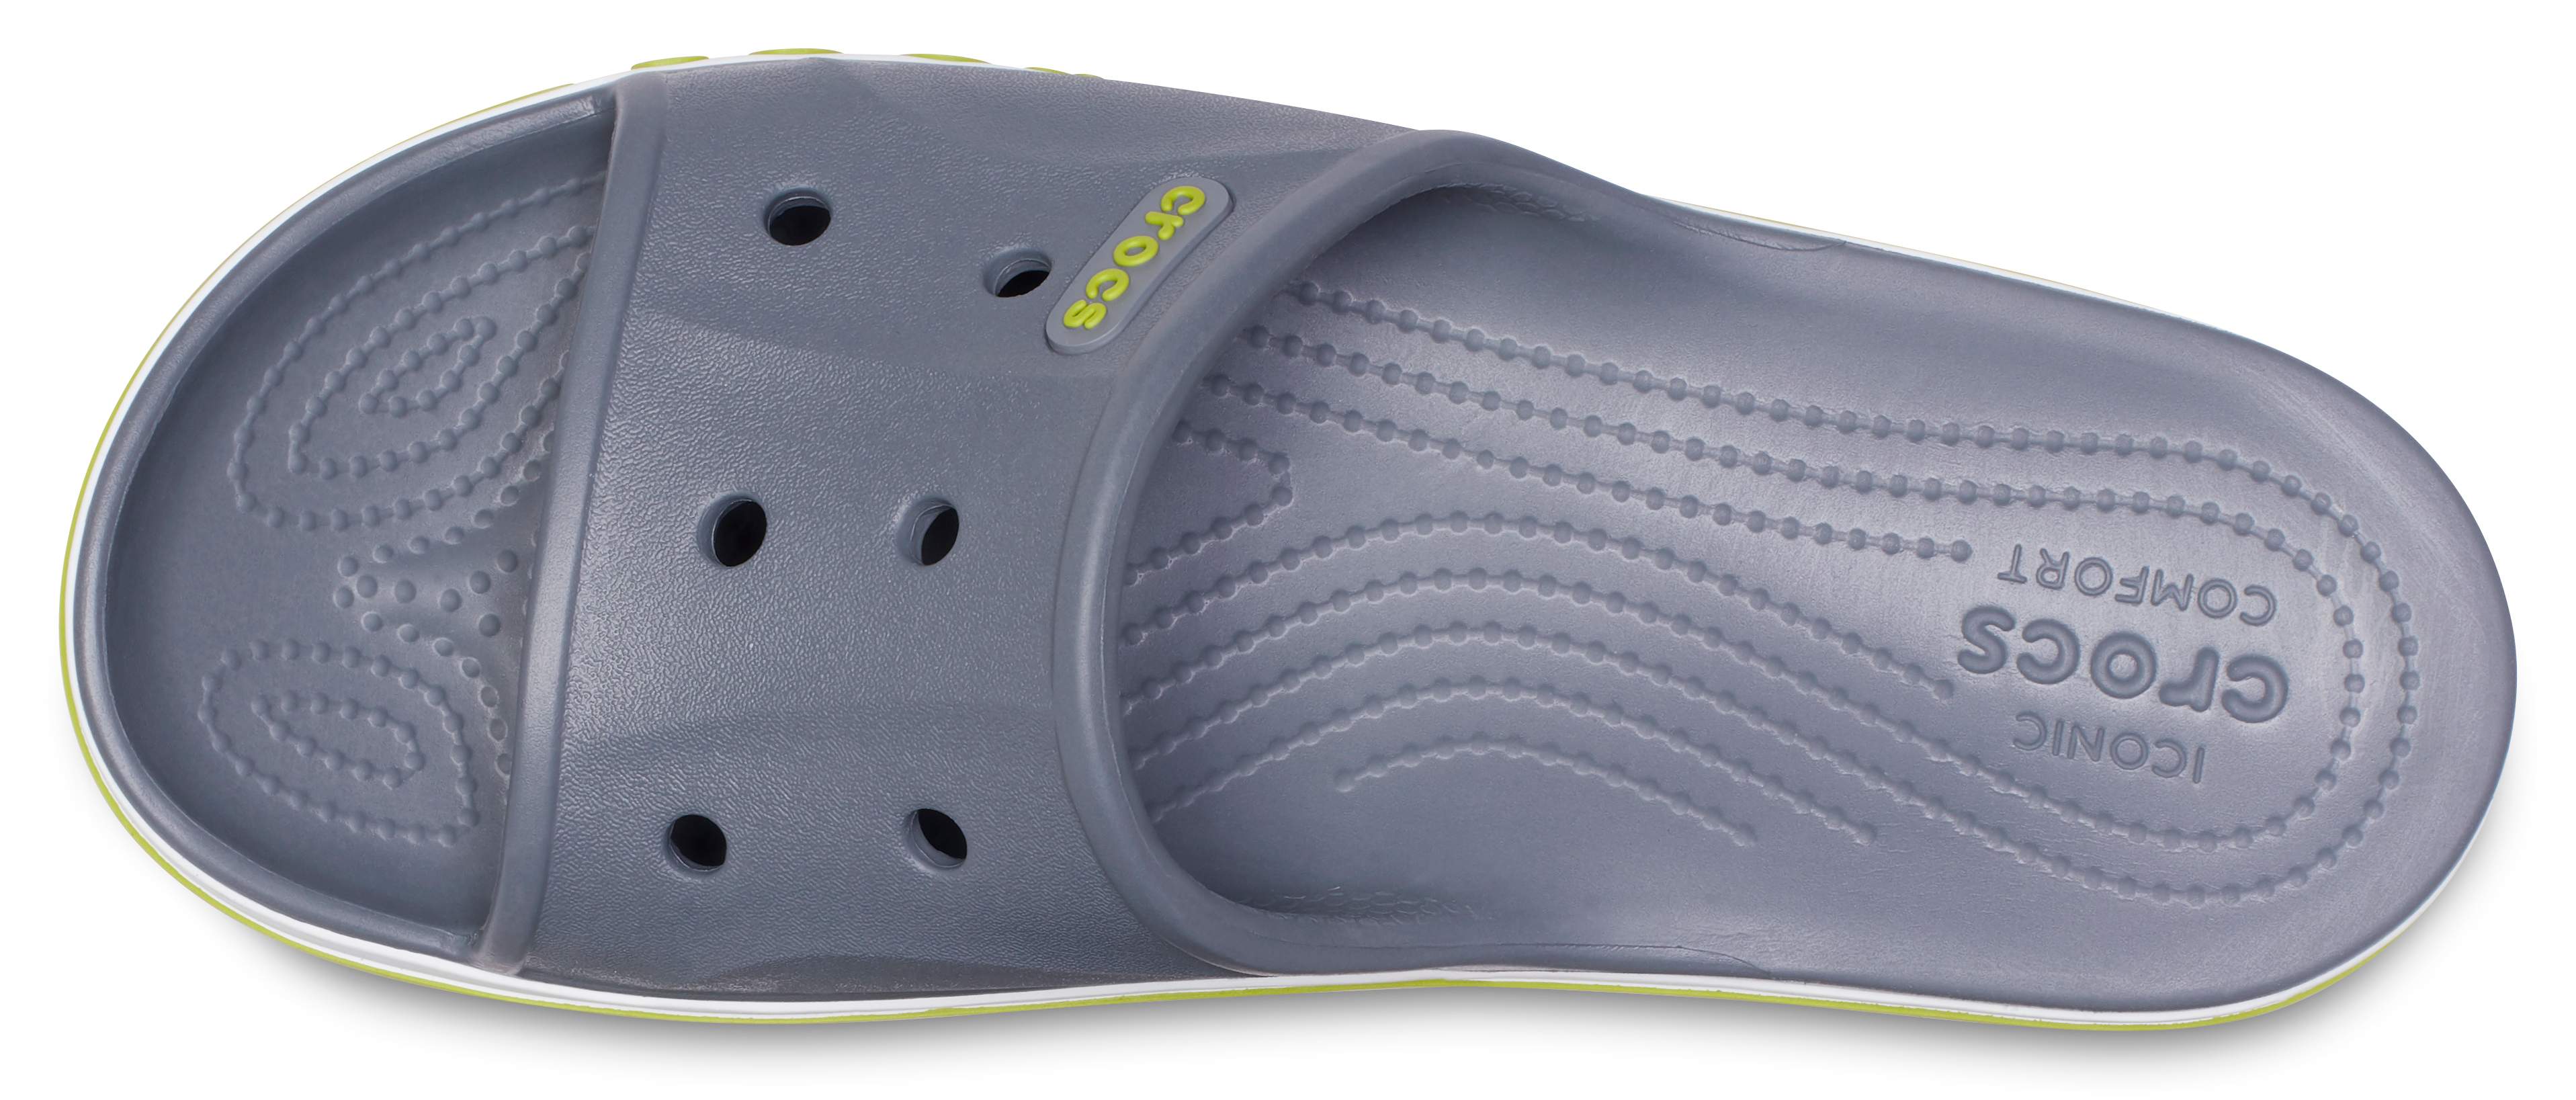 Bayaband Slide - Crocs